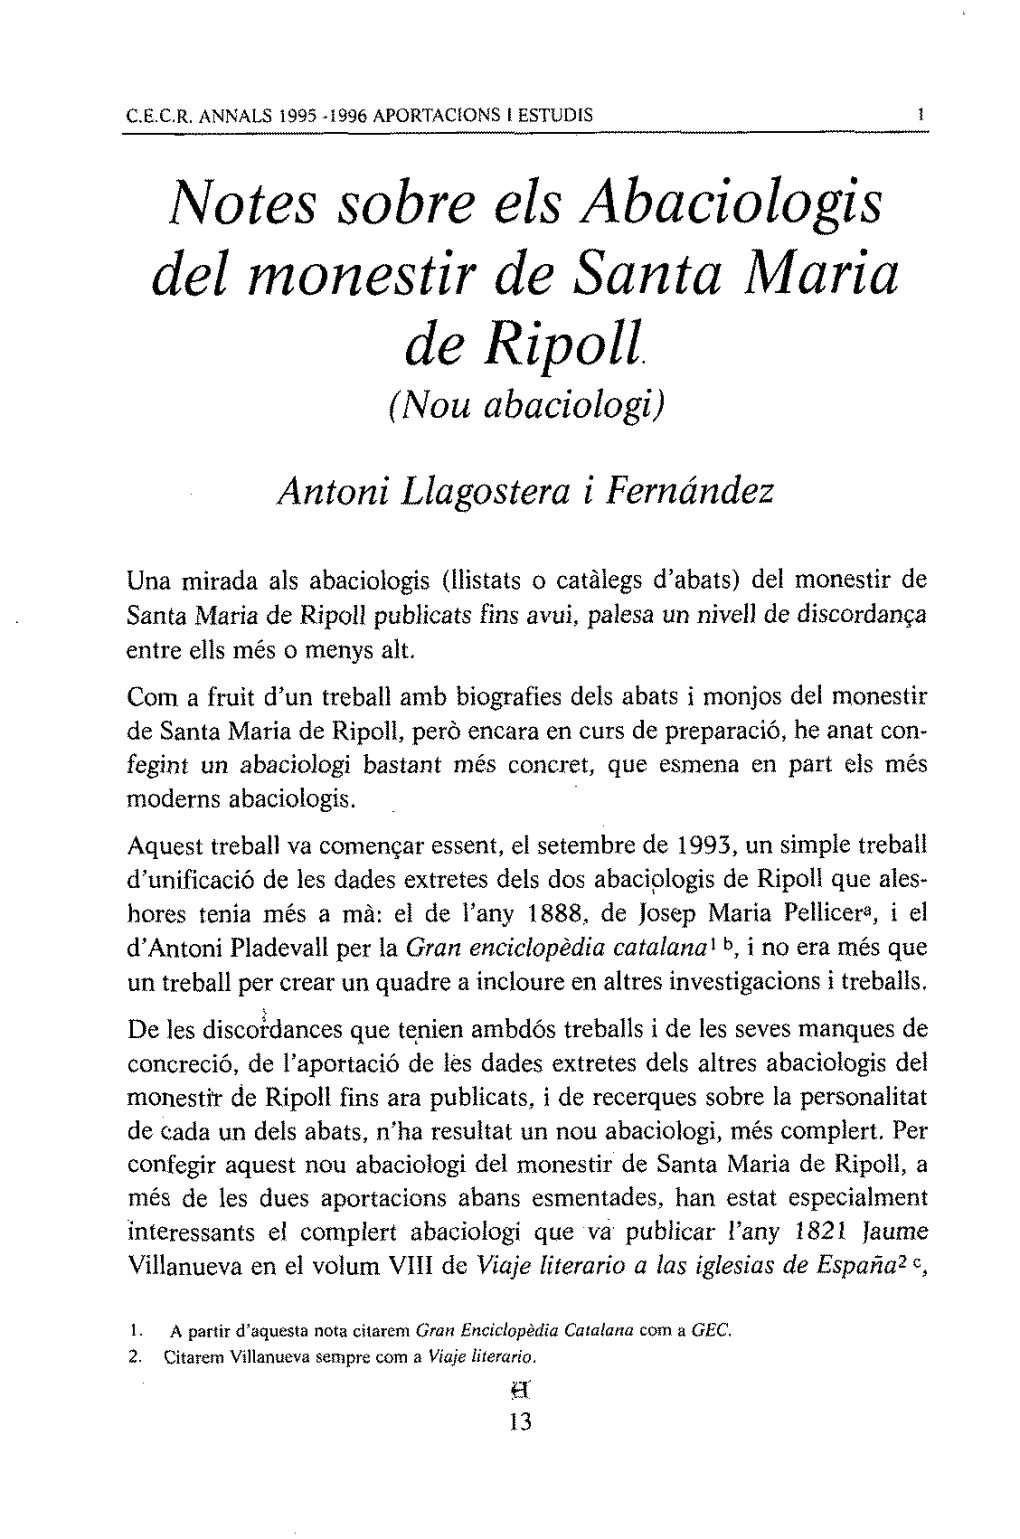 Notes Sobre Els Abaciologis Del Rnonestir De Santa Maria De Ripoll